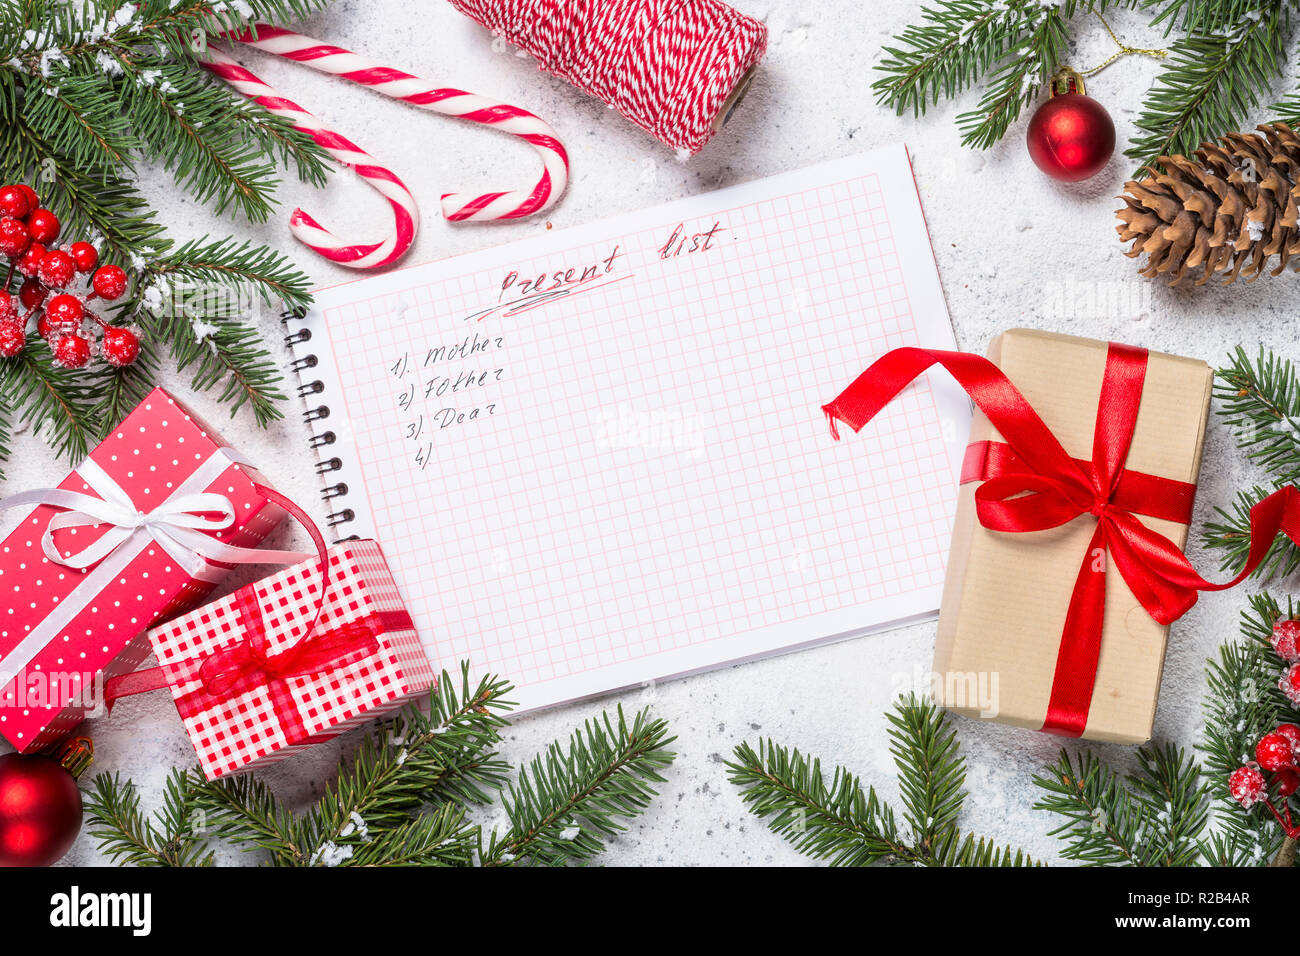 Regalos de navidad: La lista más completa de regalos para navidad